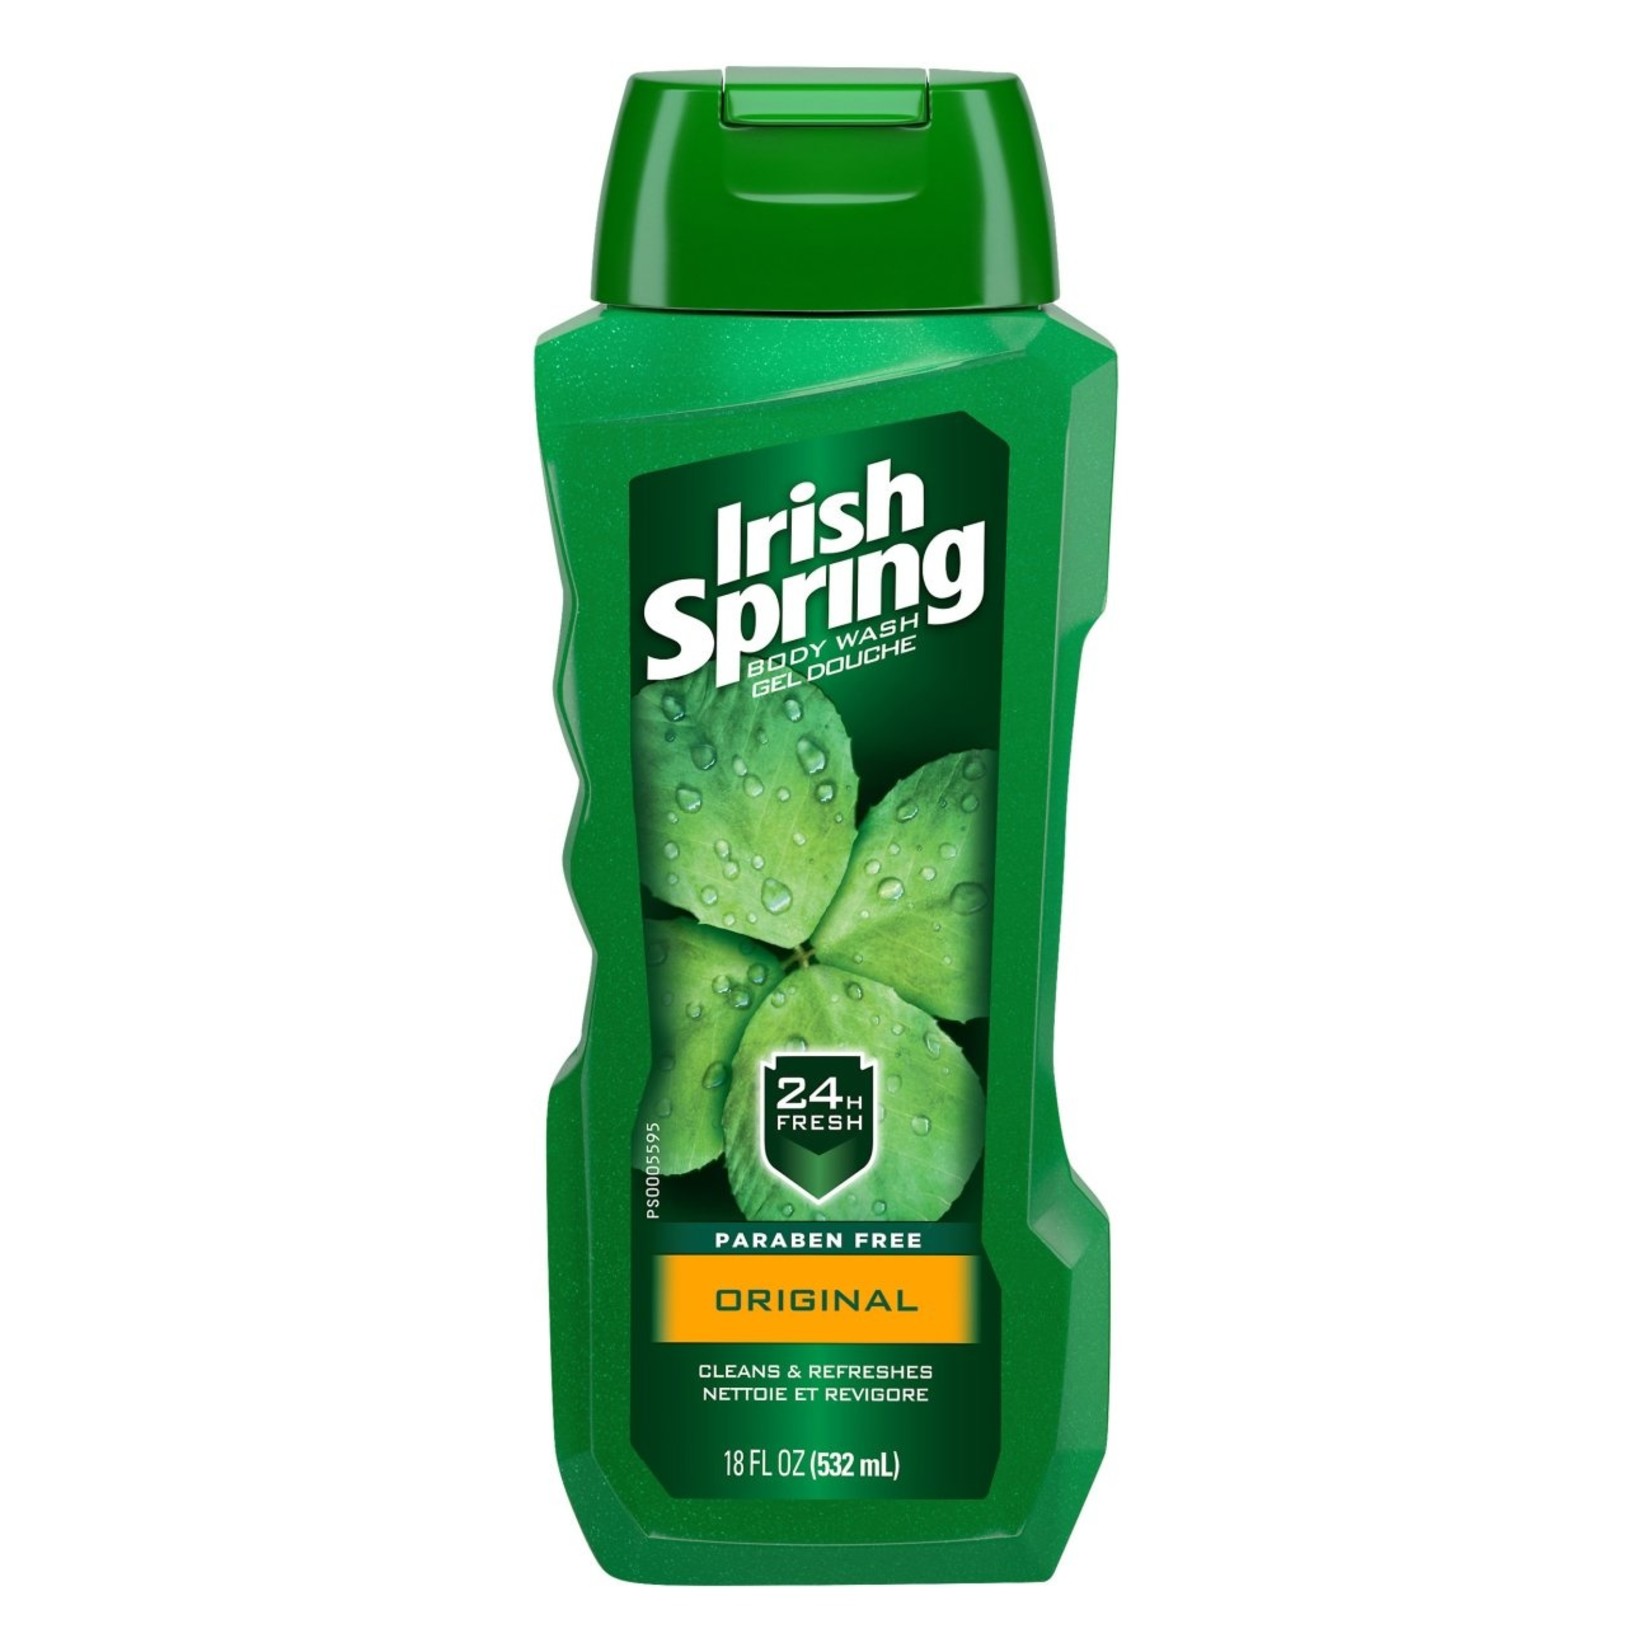 Irish Spring Irish Spring Body Wash - Original